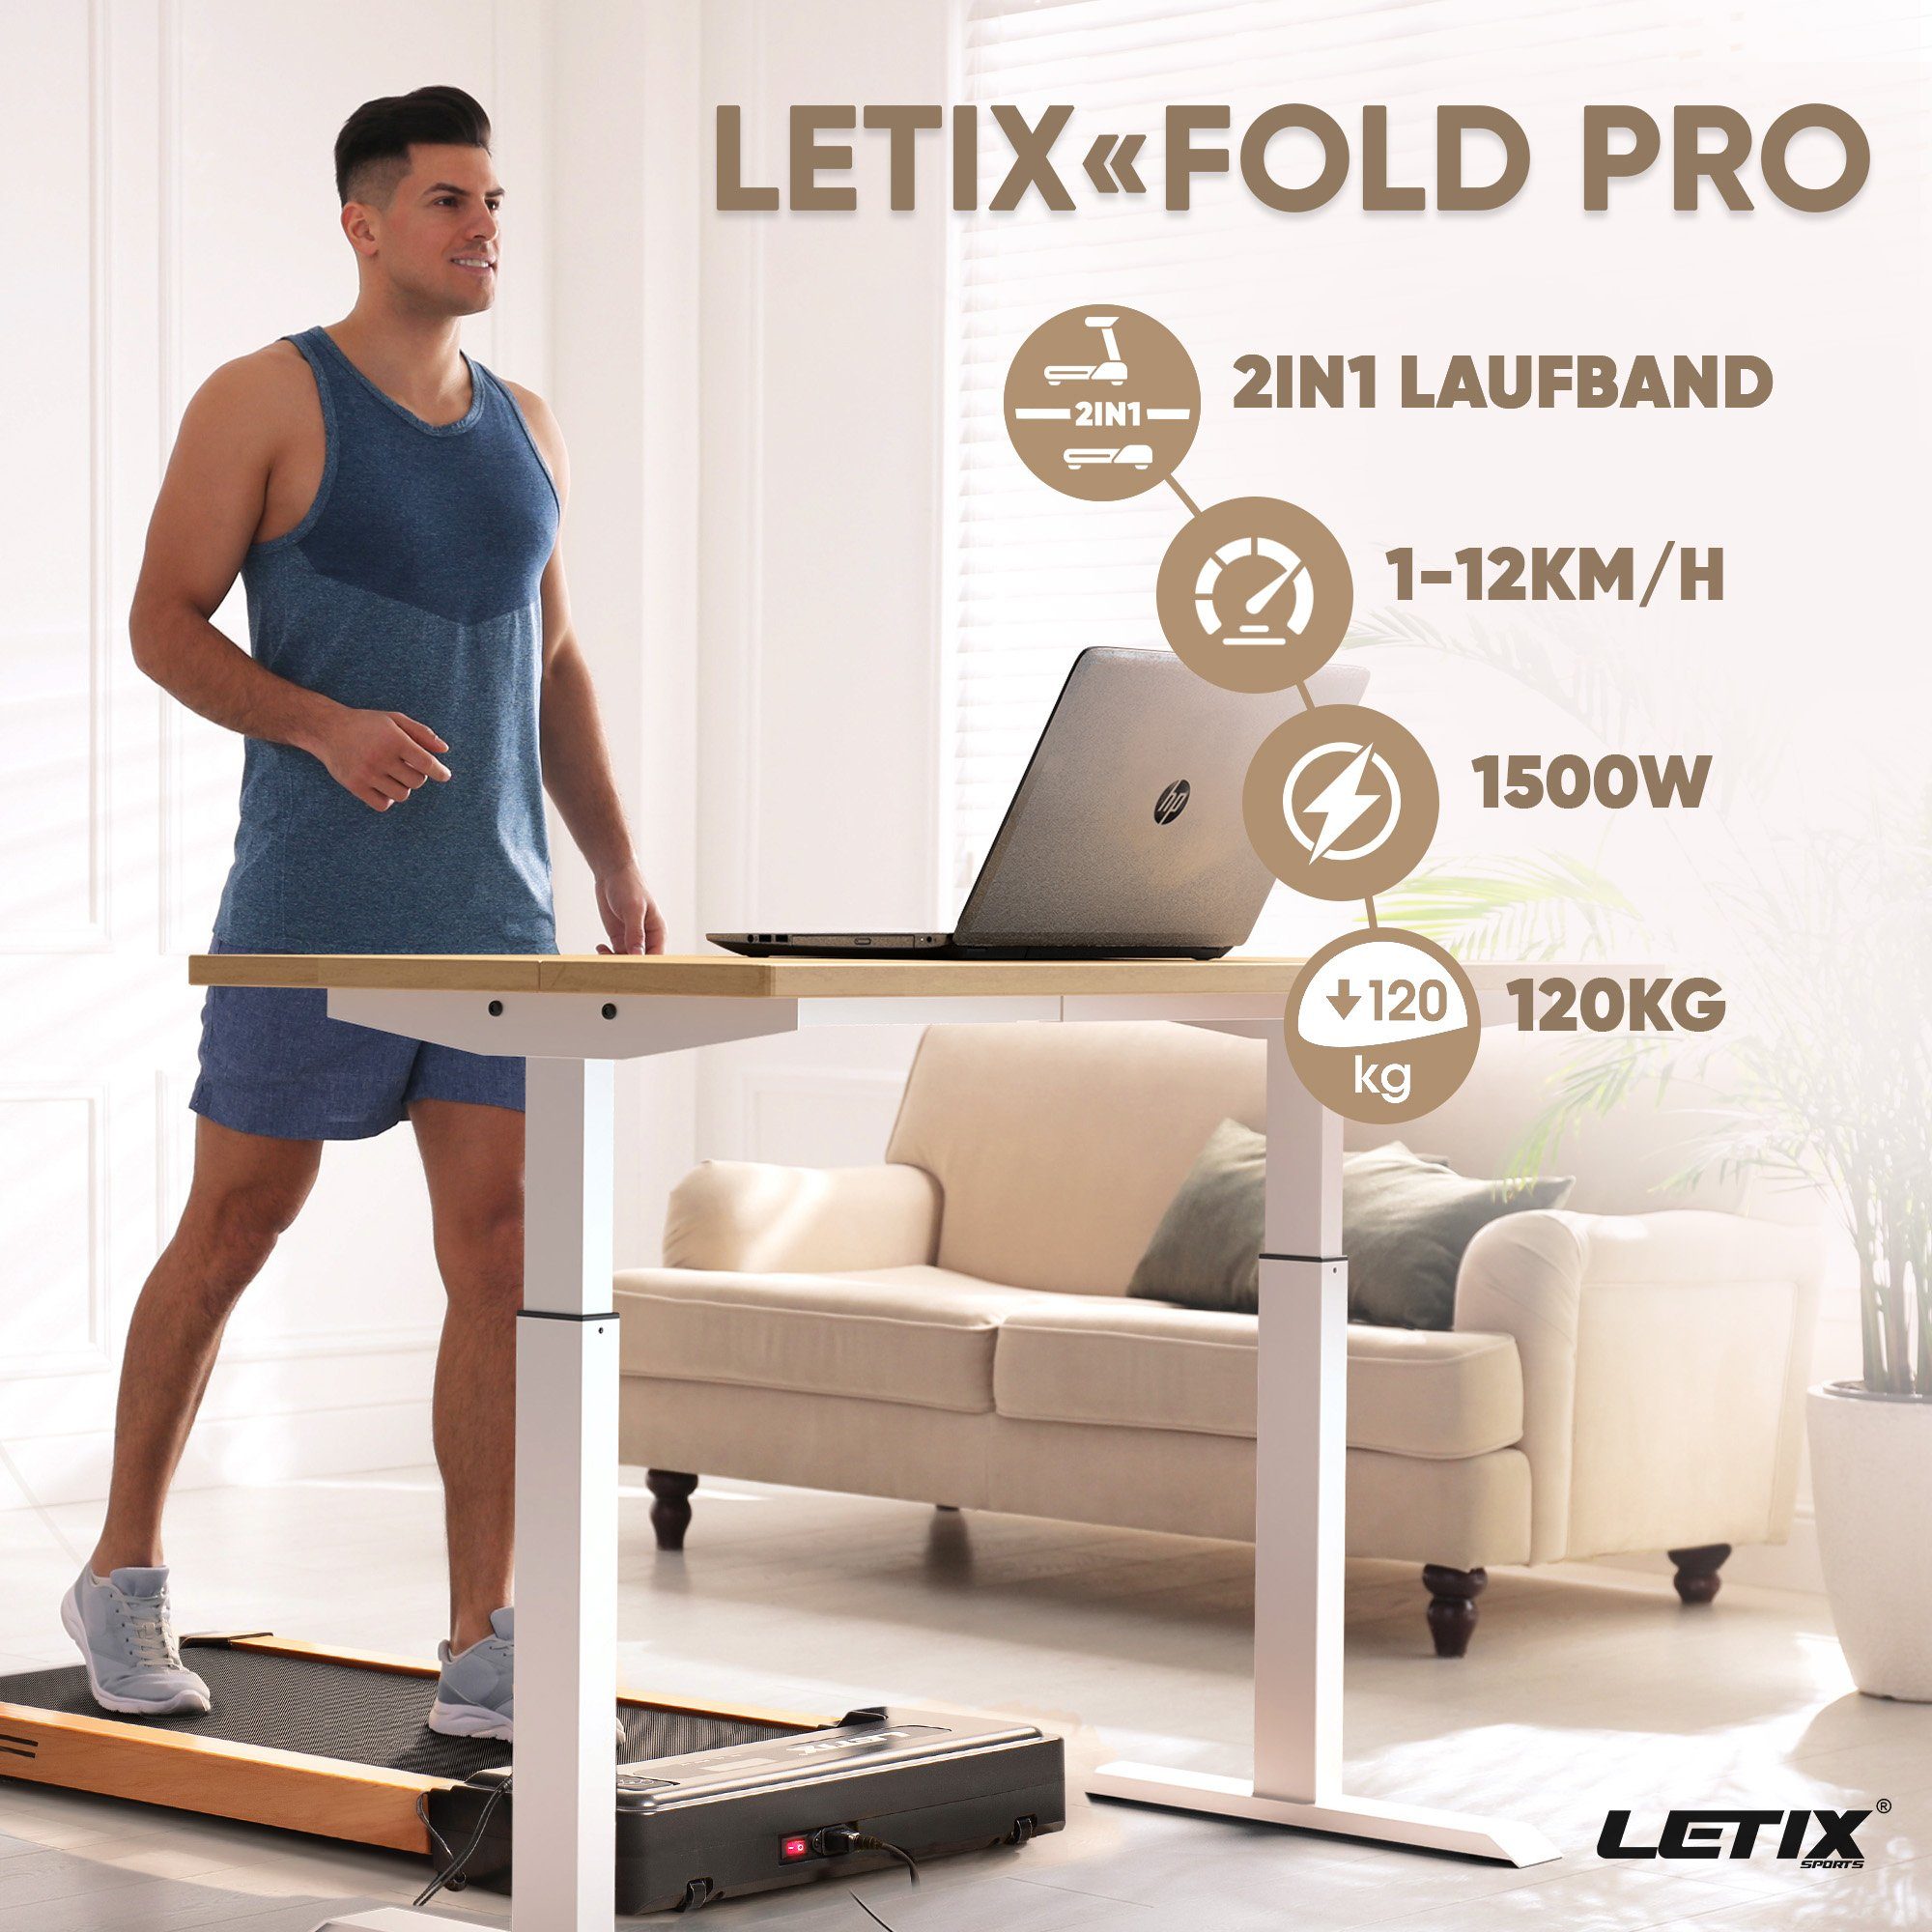 weiß und motorisiertes Bluetooth Letix Fitnessgerät, Hause Funktion, Büro, zu Heimtrainer APP & LCD-Display, für Laufband Sports 2in1 FoldPro mit